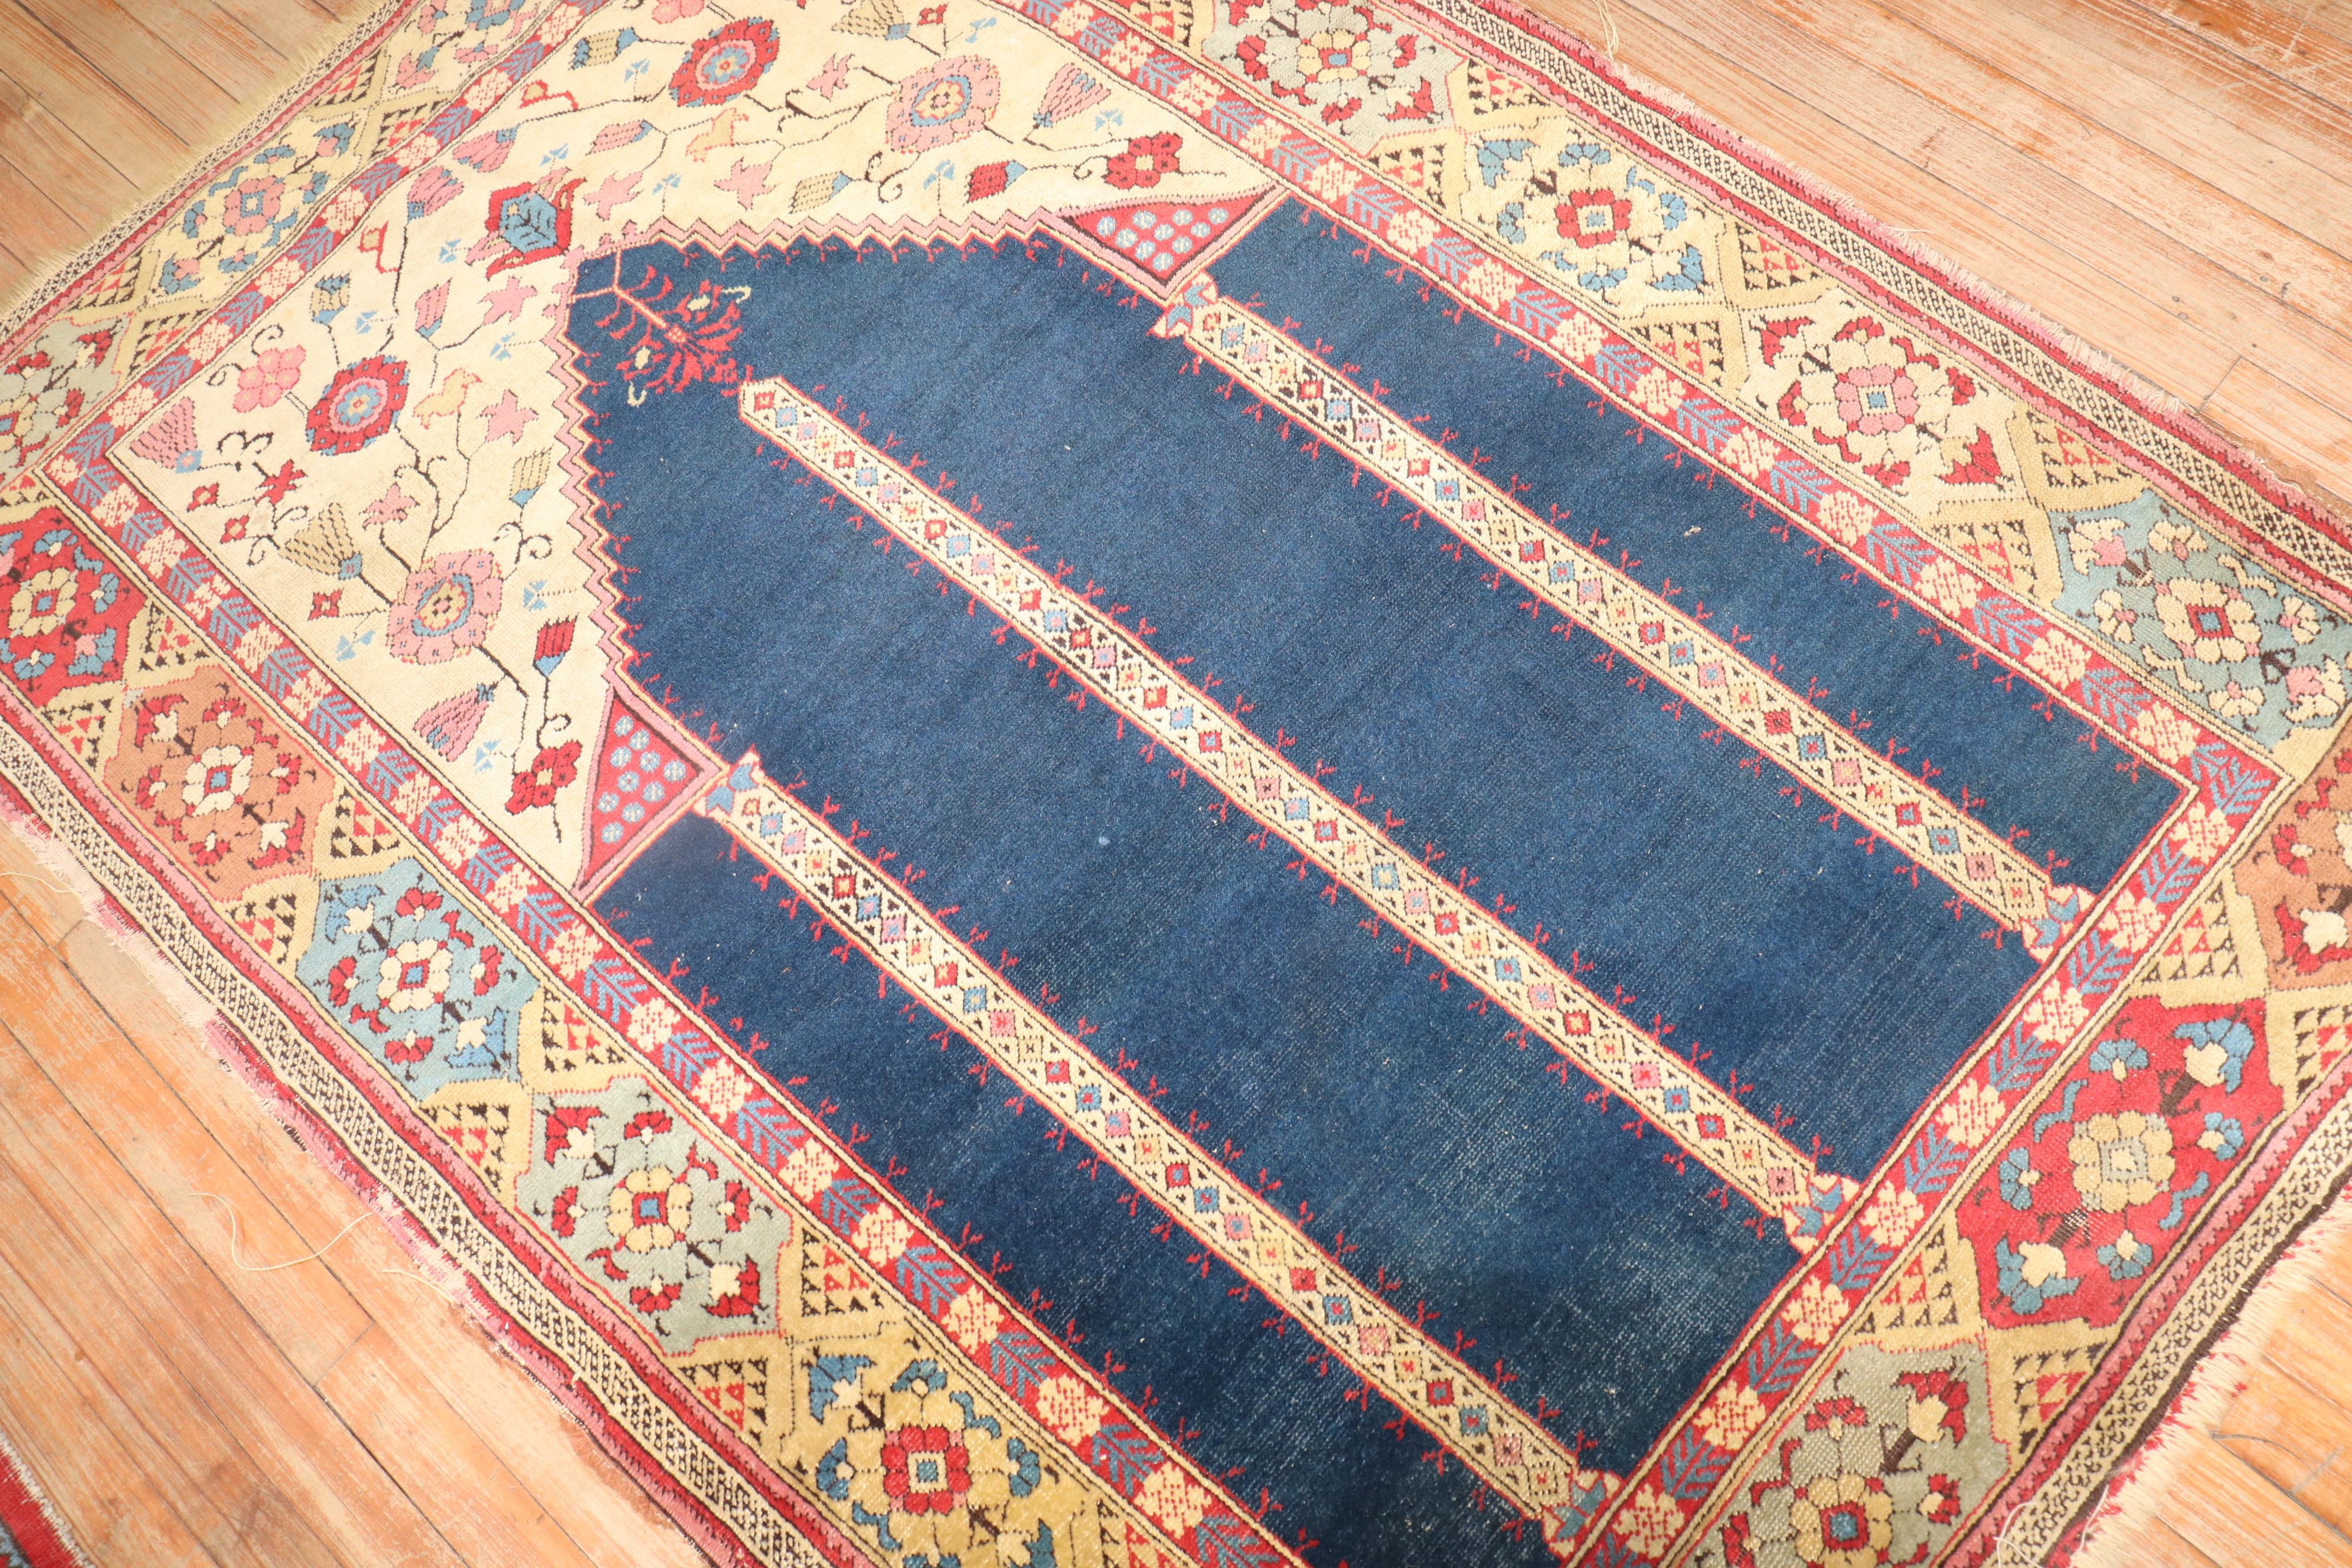 Siebenbürgischer Tuduc-Teppich aus dem späten 19. Jahrhundert mit einem doppelten Nischenmuster auf einem auffälligen marineblauen Feld.

Maße: 4'1'' x 5'10''.